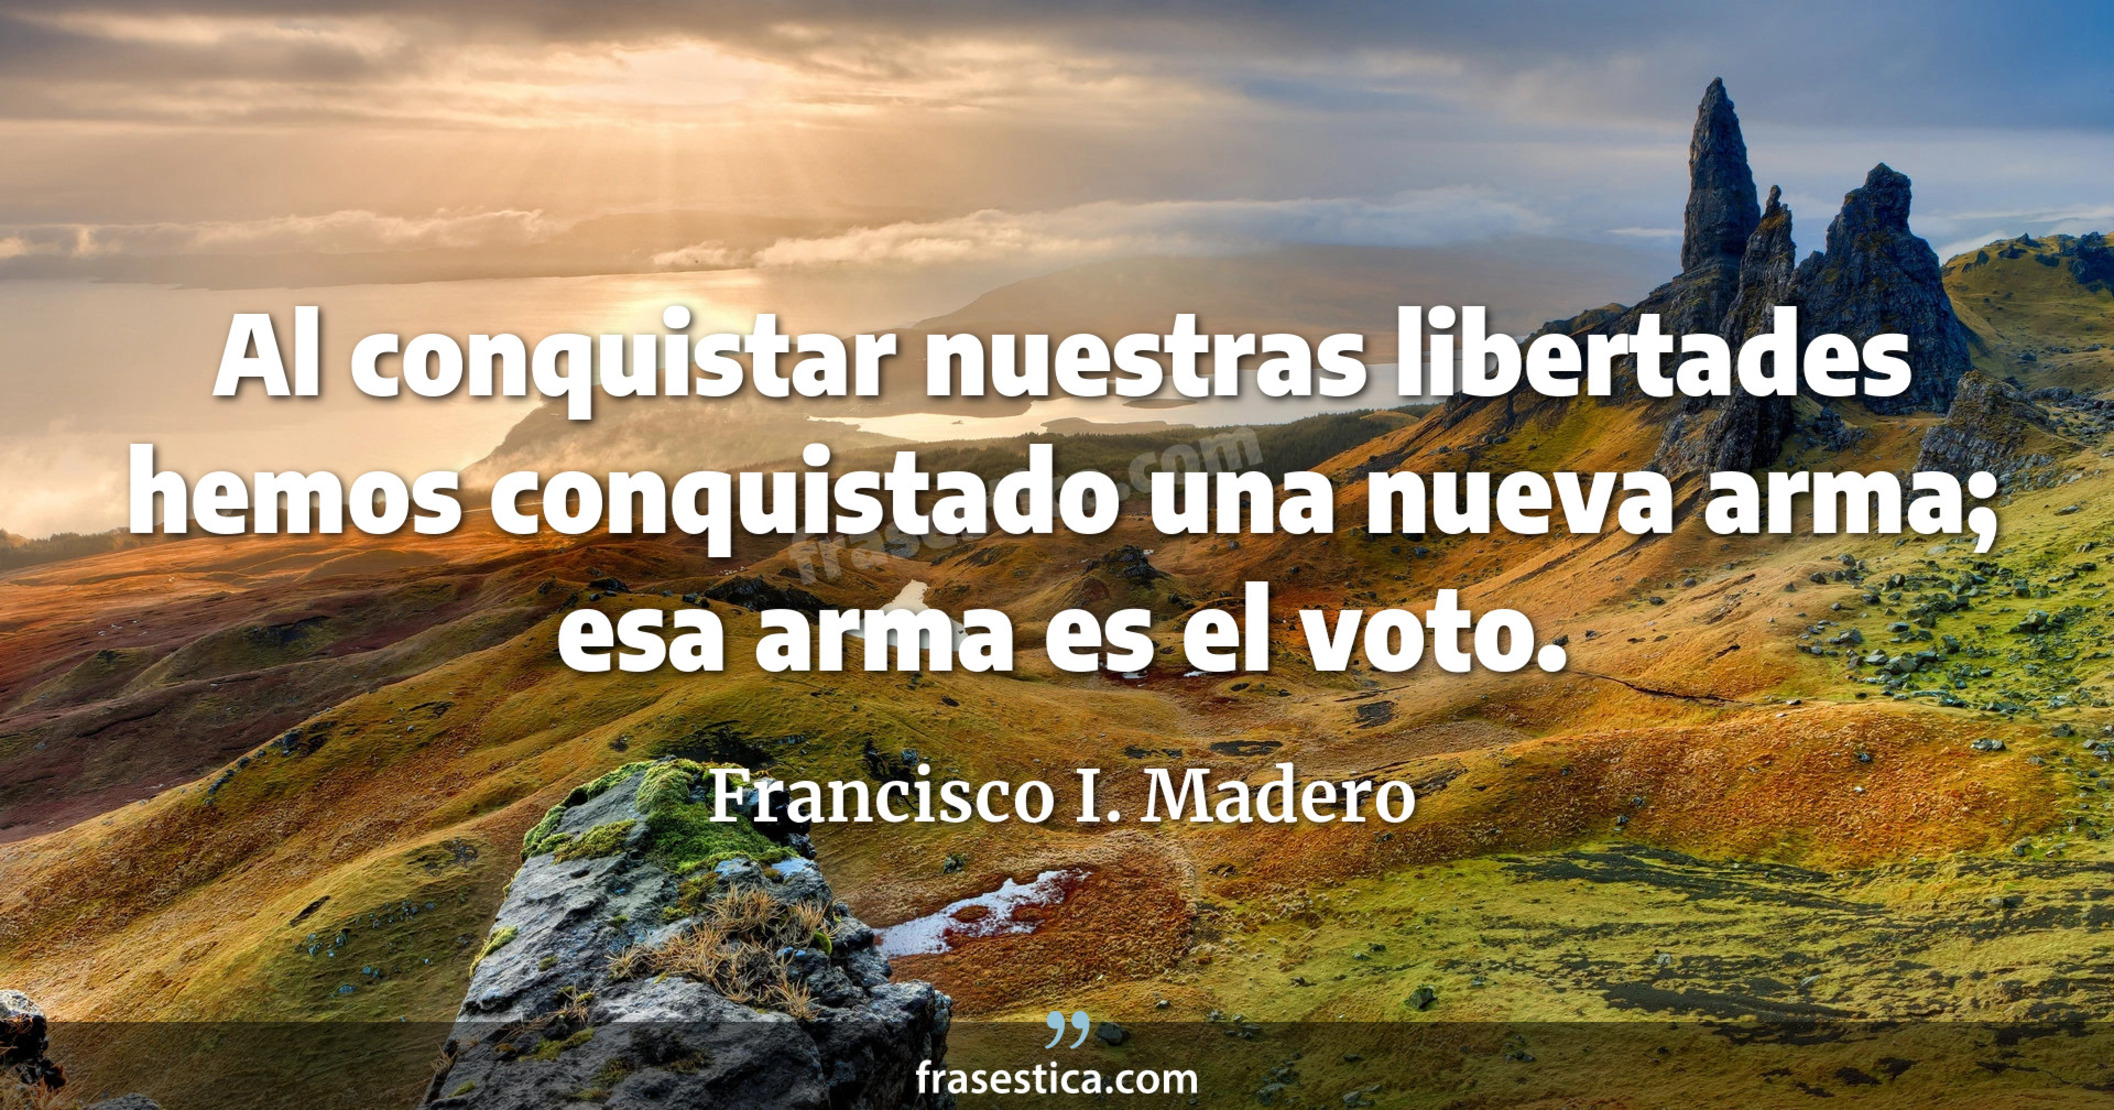 Al conquistar nuestras libertades hemos conquistado una nueva arma; esa arma es el voto. - Francisco I. Madero